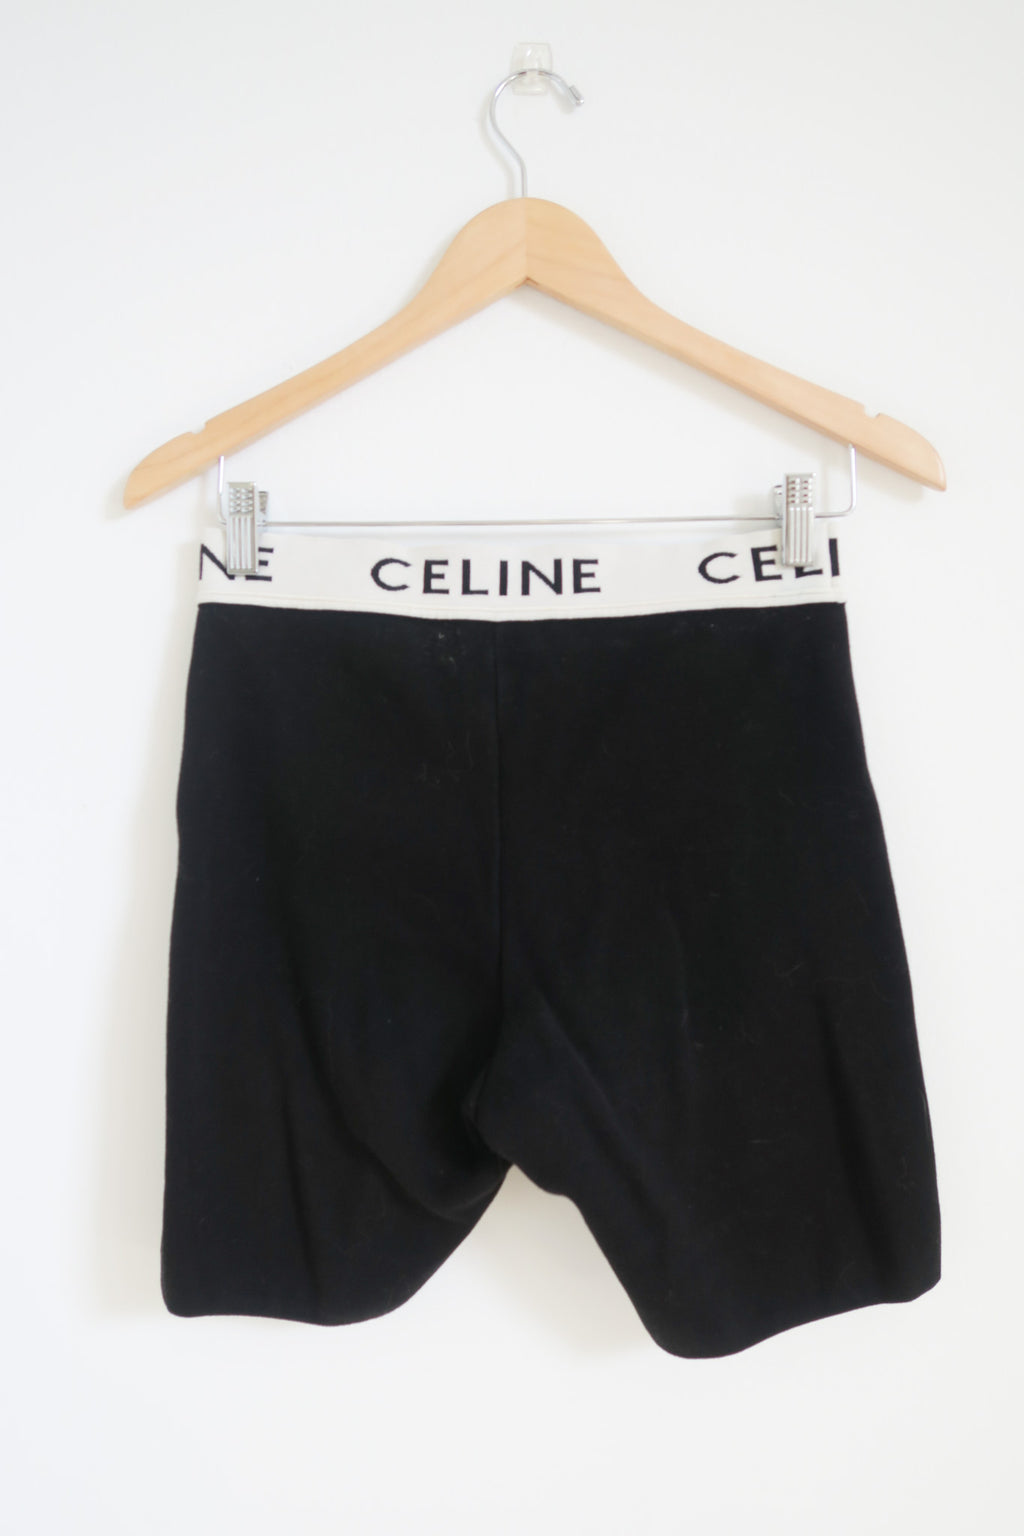 Celine Graphic Print Shorts sz M